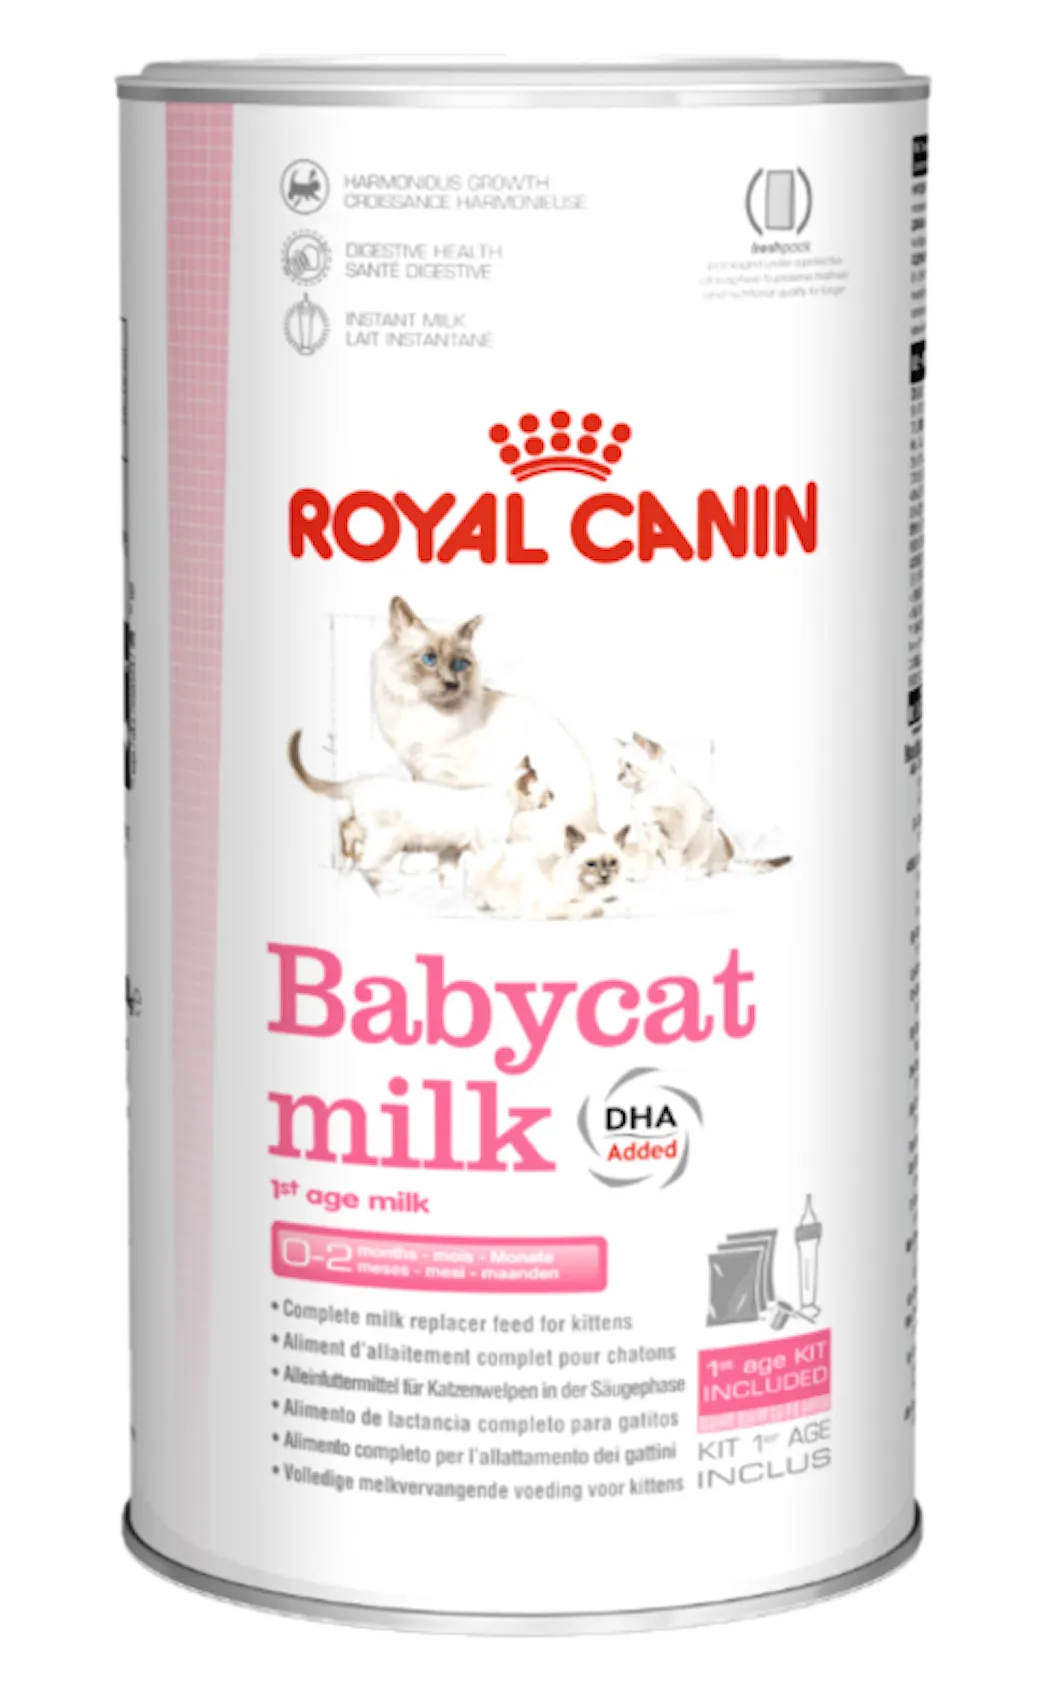 Royal Canin Feline Babycat Milk 300 g